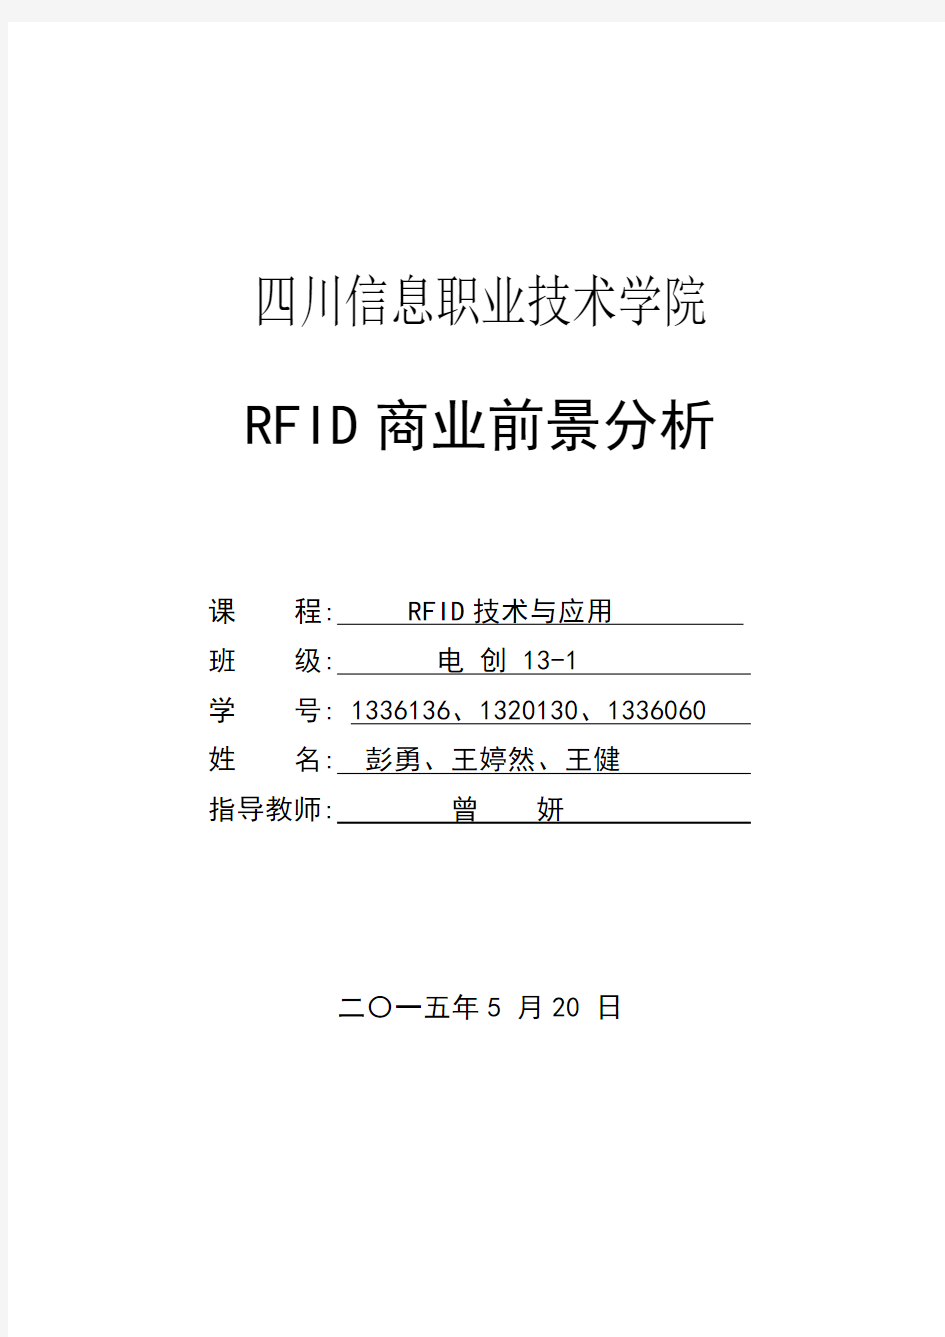 第五组 RFID商业前景分析